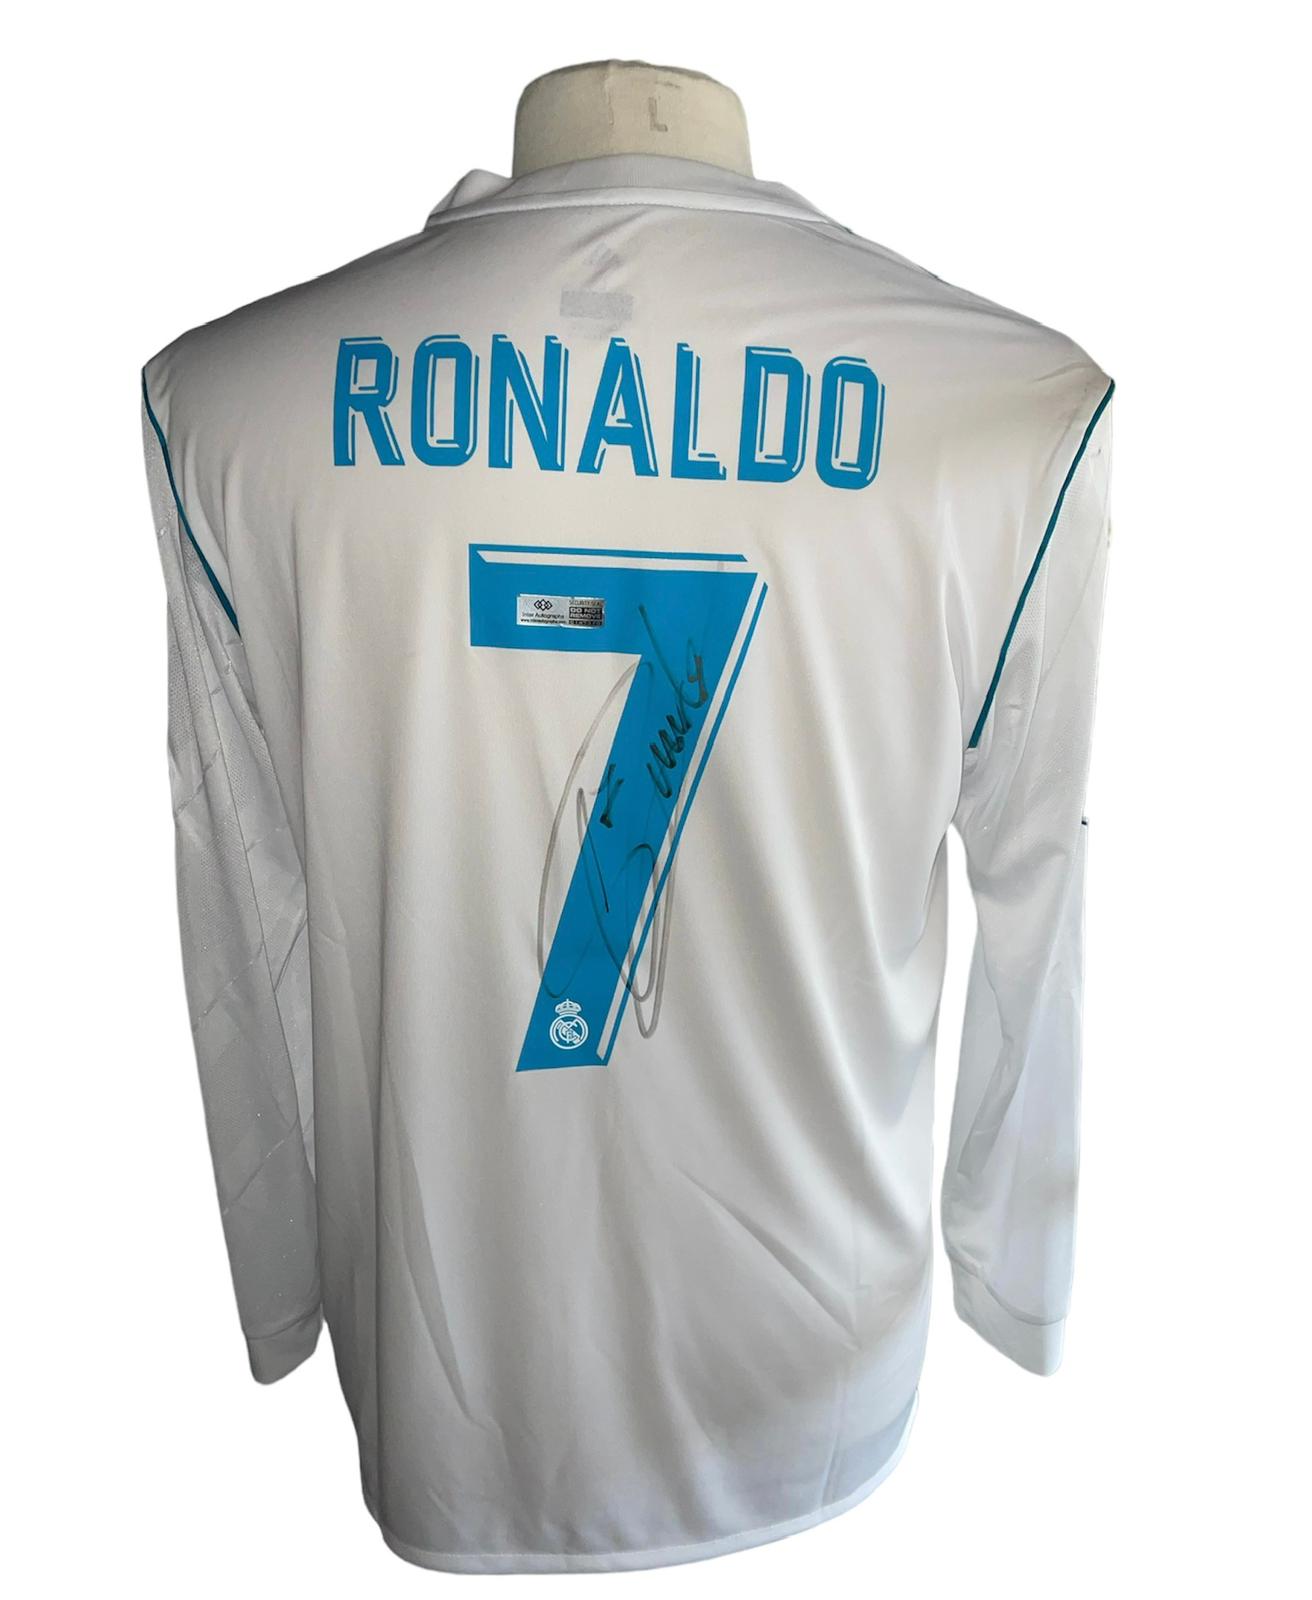 Cristiano Ronaldo gesigneerd Real Madrid Champions League finale 17/18 shirt met certificaat